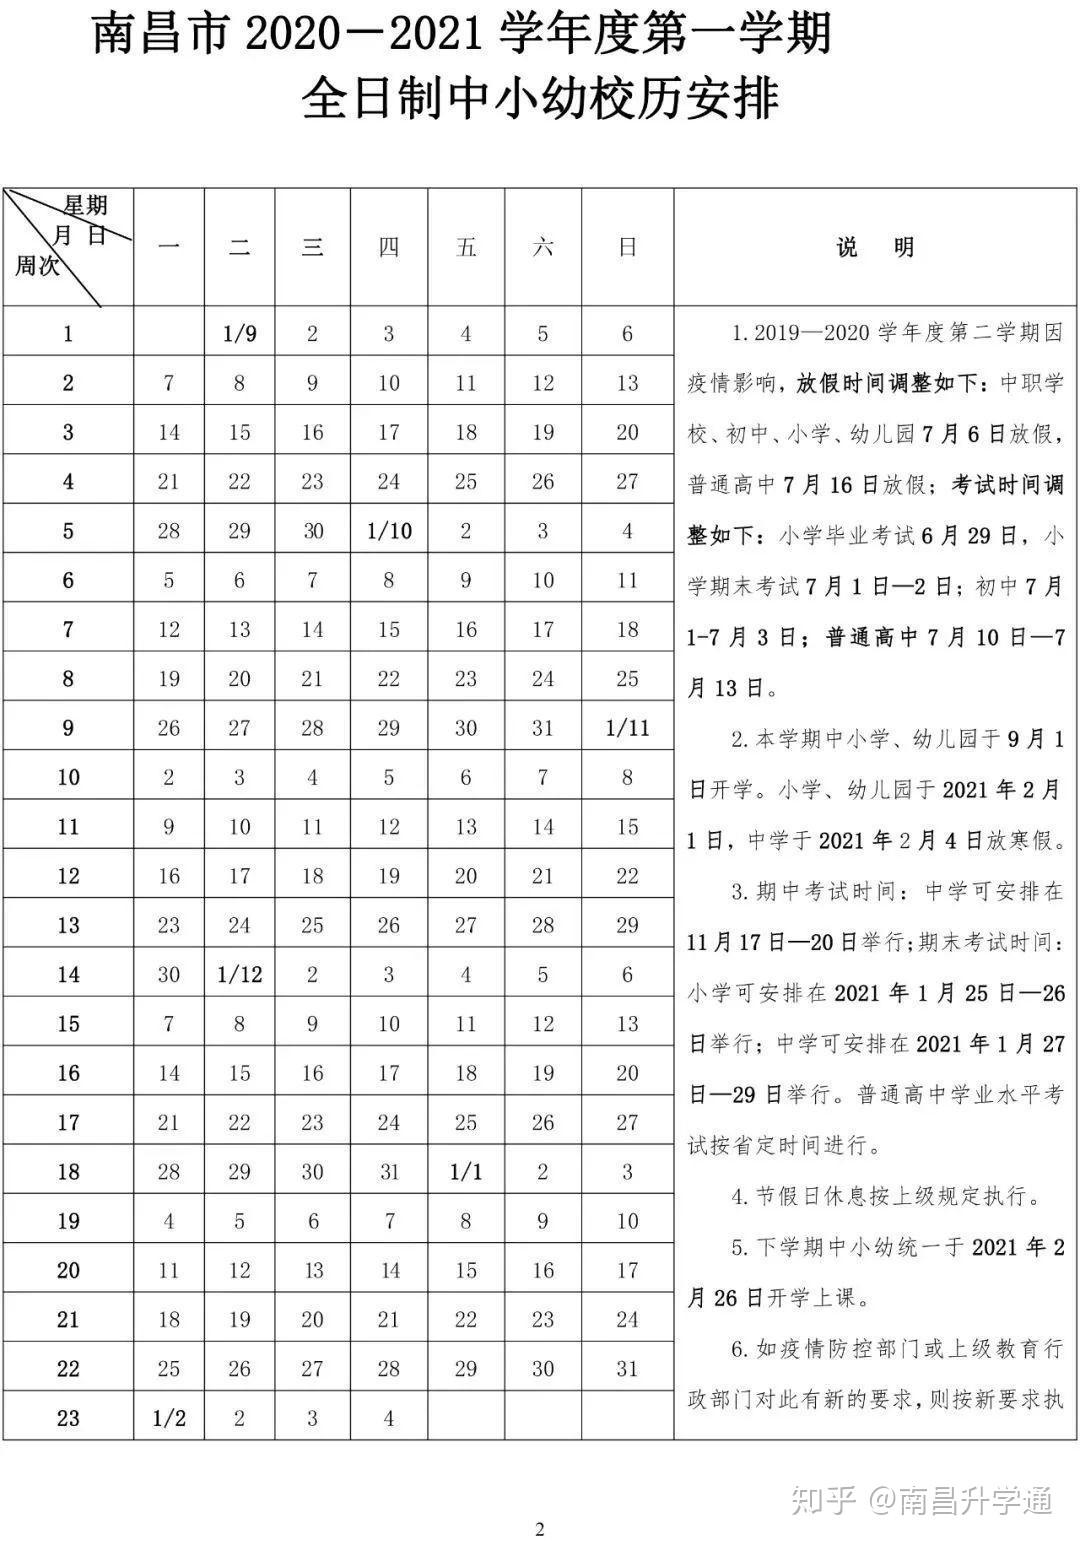 江苏小学期中考试时间表